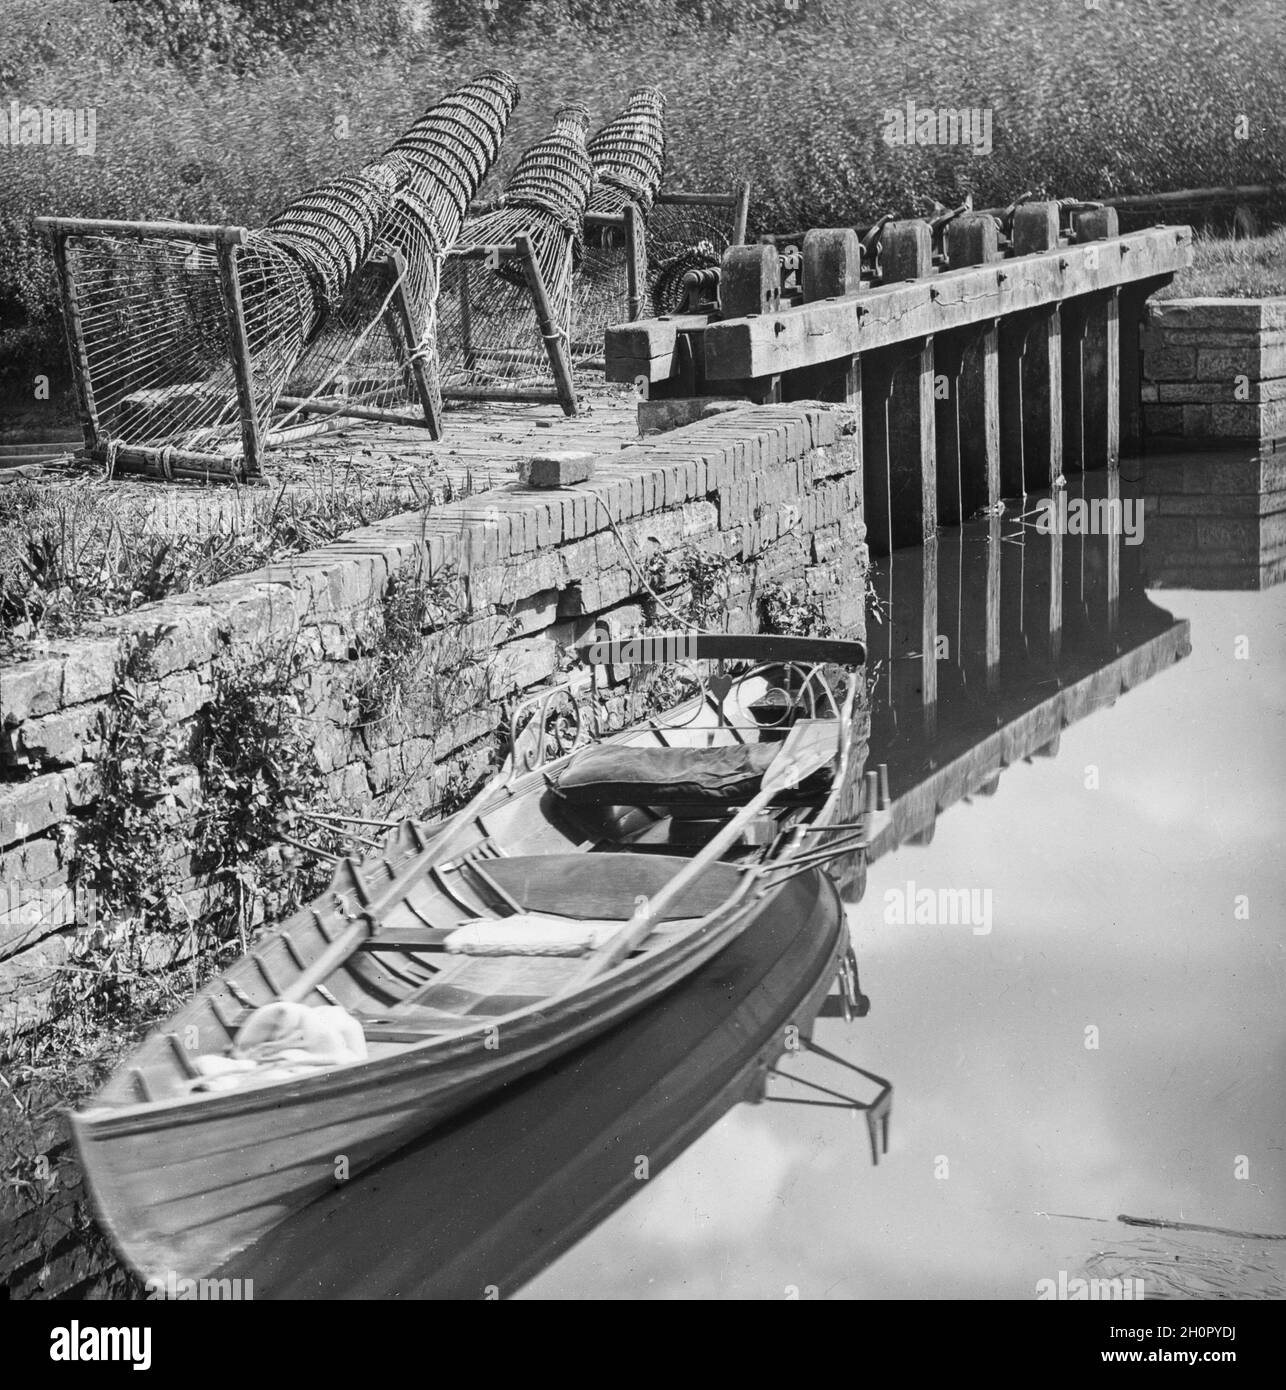 Photographie victorienne d'époque en noir et blanc montrant des pièges à poissons anglais traditionnels sur le côté d'une rivière avec un petit bateau à ramer. Banque D'Images